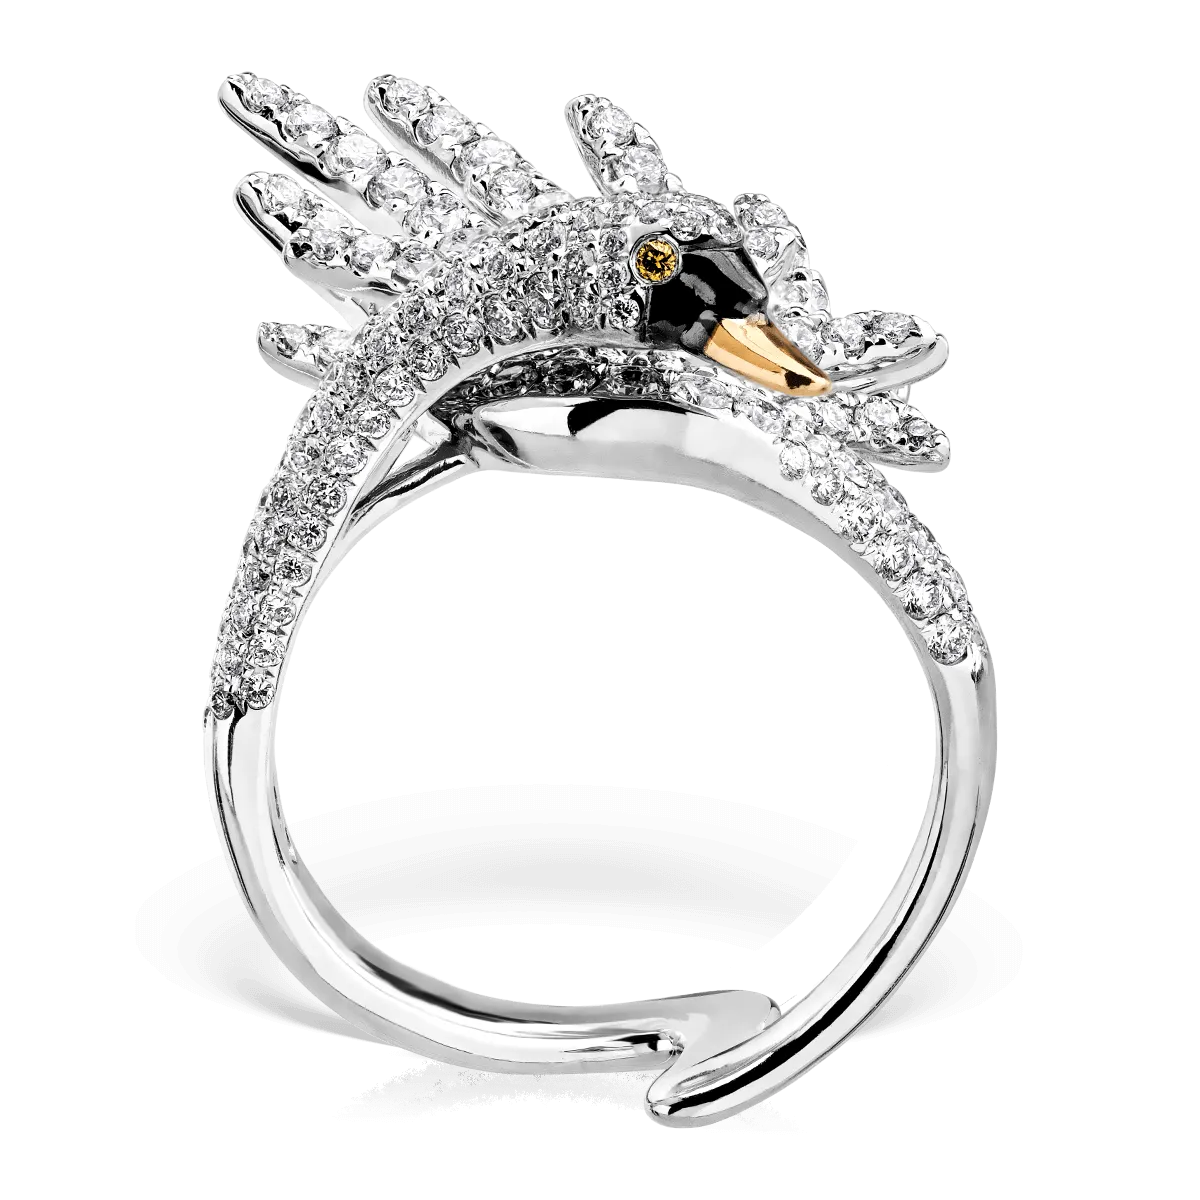 Hattyús gyűrű 18K-os fehér aranyból 1.68ct átlátszó gyémánttal és 0.01ct sárga gyémánttal